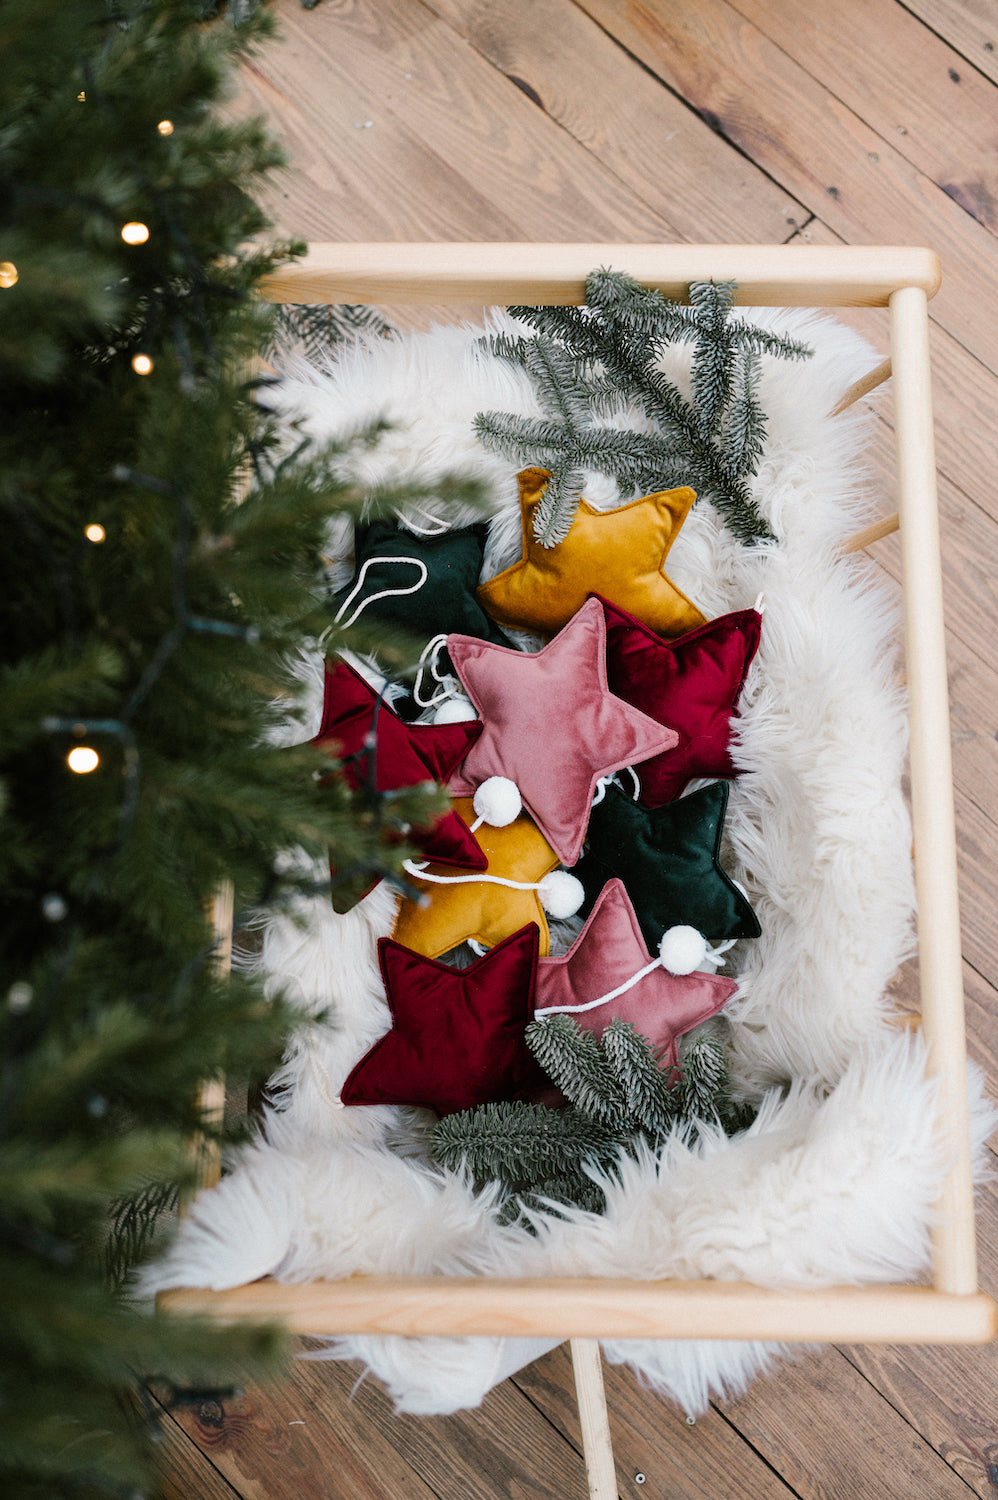 małe zawieszki gwiazdki od bettys home w drewnianym wózku świątecznym obok choinki